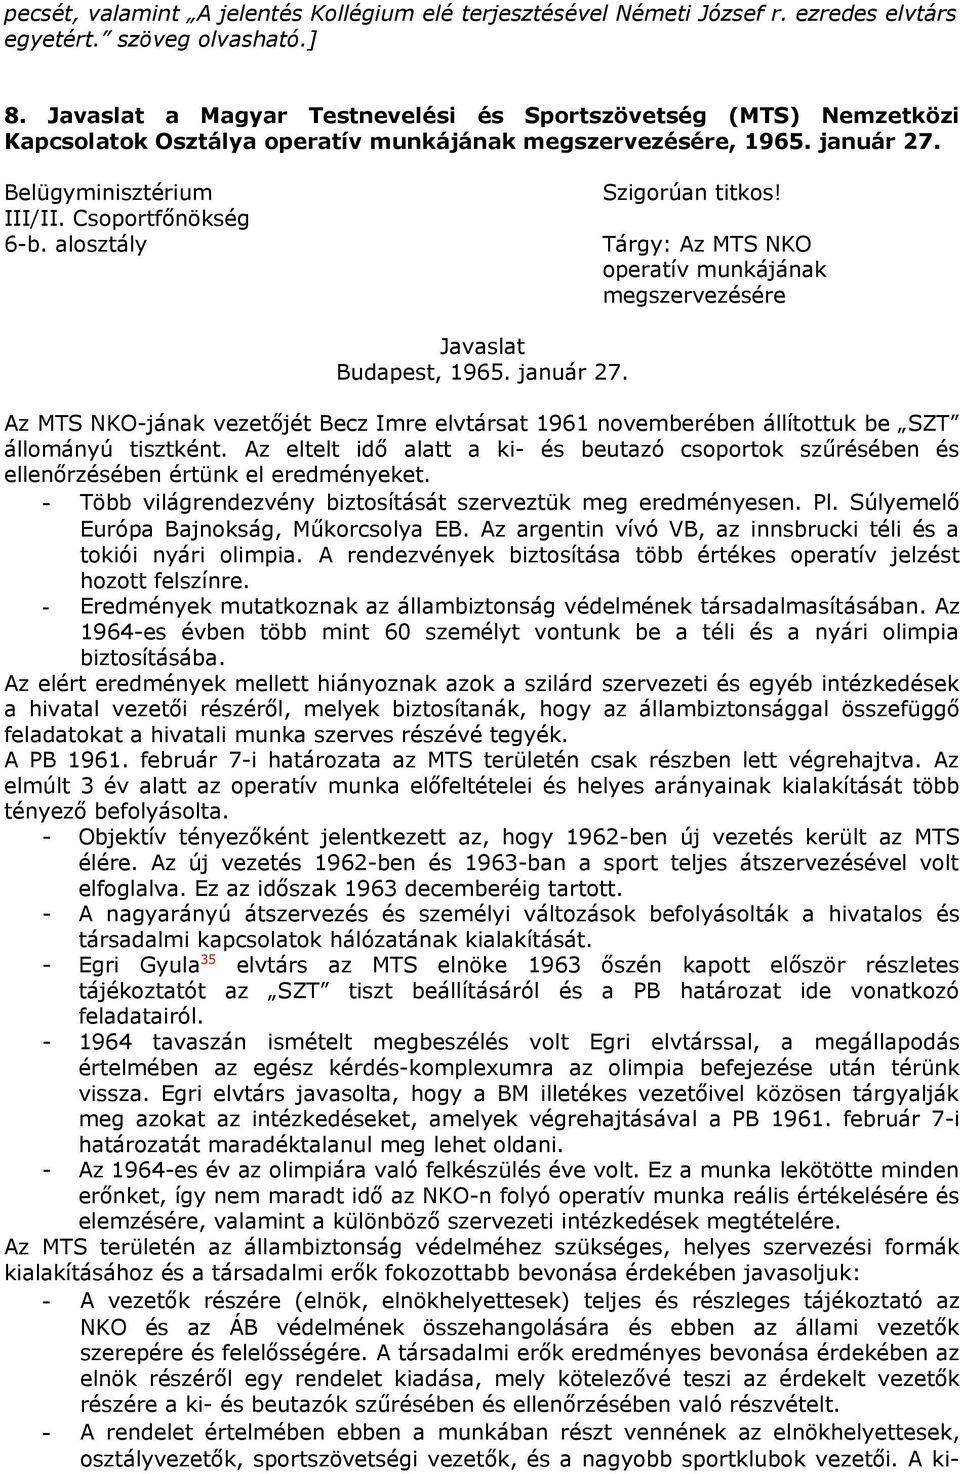 alosztály Szigorúan titkos! Tárgy: Az MTS NKO operatív munkájának megszervezésére Javaslat Budapest, 1965. január 27.